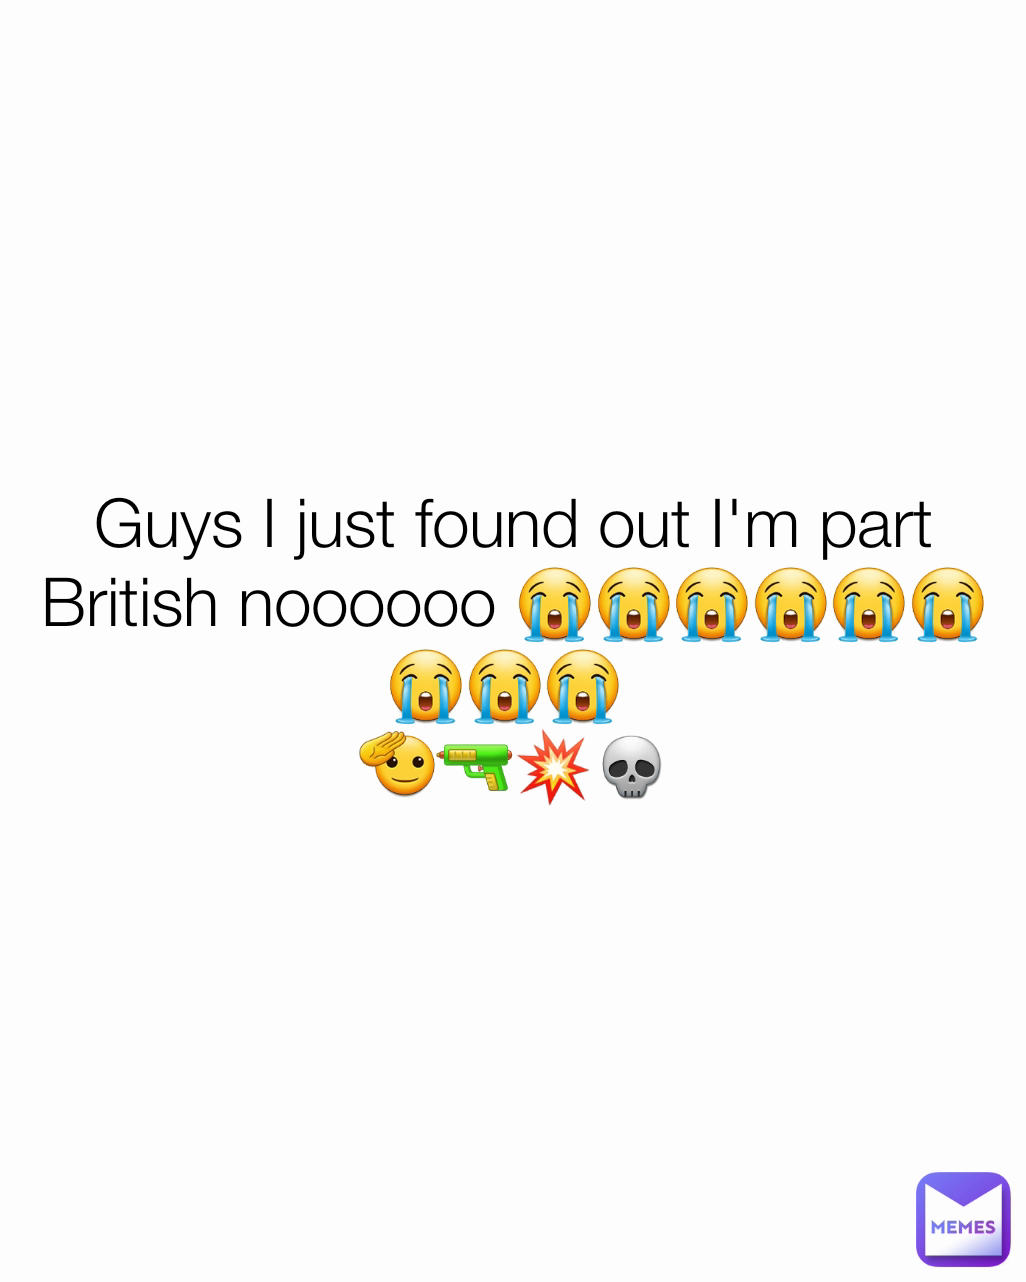 Guys I just found out I'm part British noooooo 😭😭😭😭😭😭😭😭😭 
🫡🔫💥💀